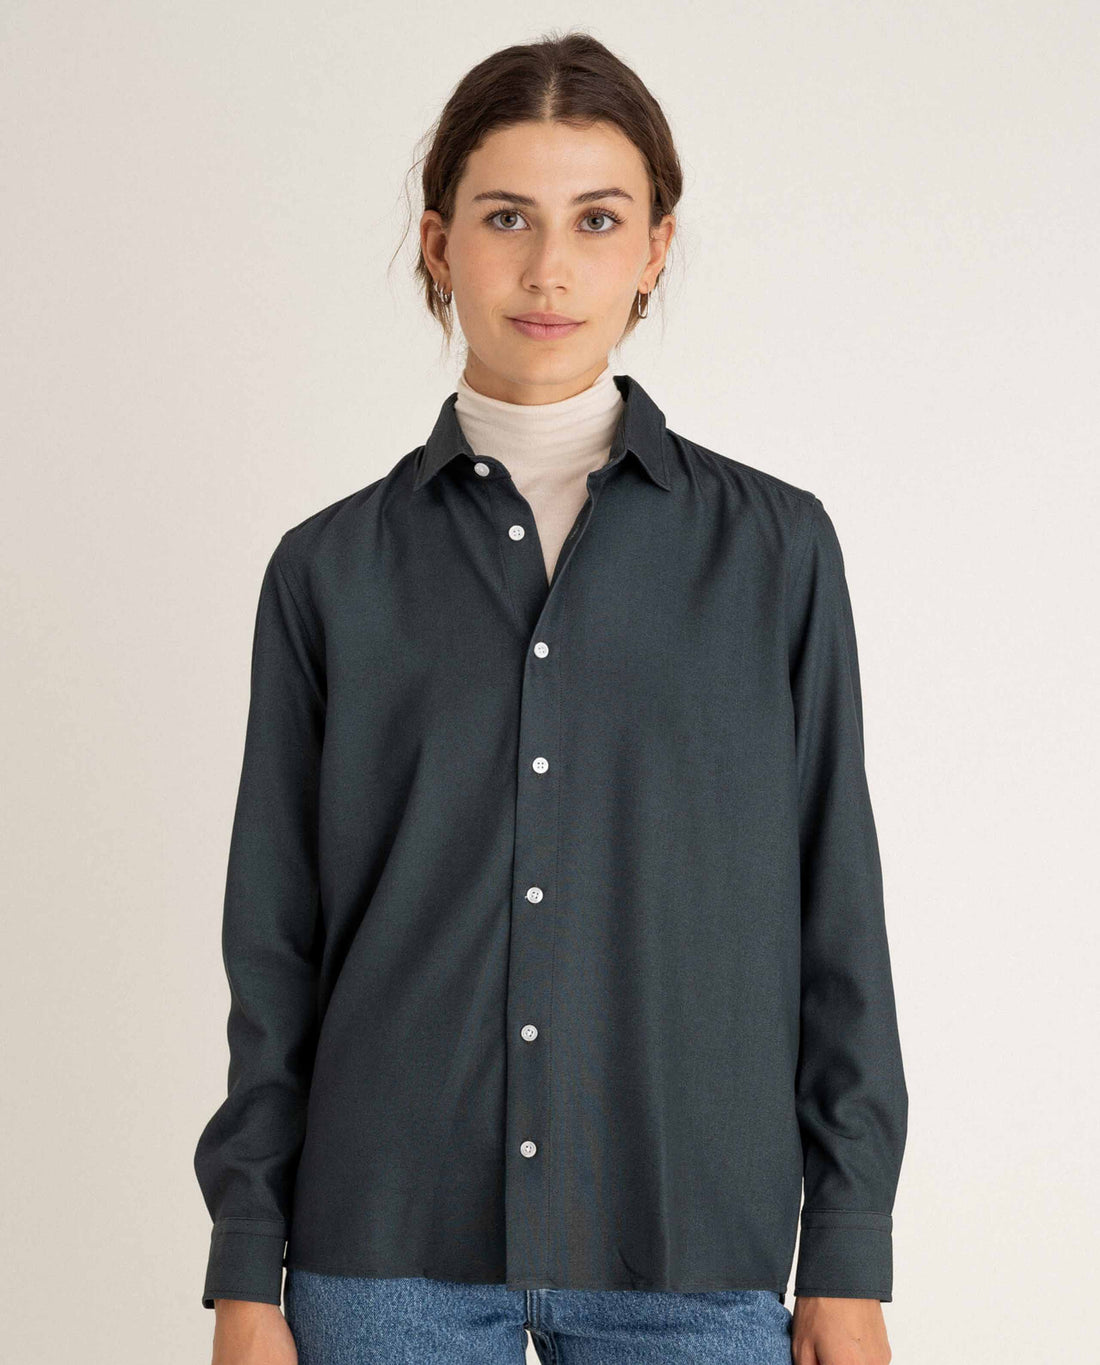 marché commun noyoco chemise fluide femme viscose upcyclée vert émeraude 